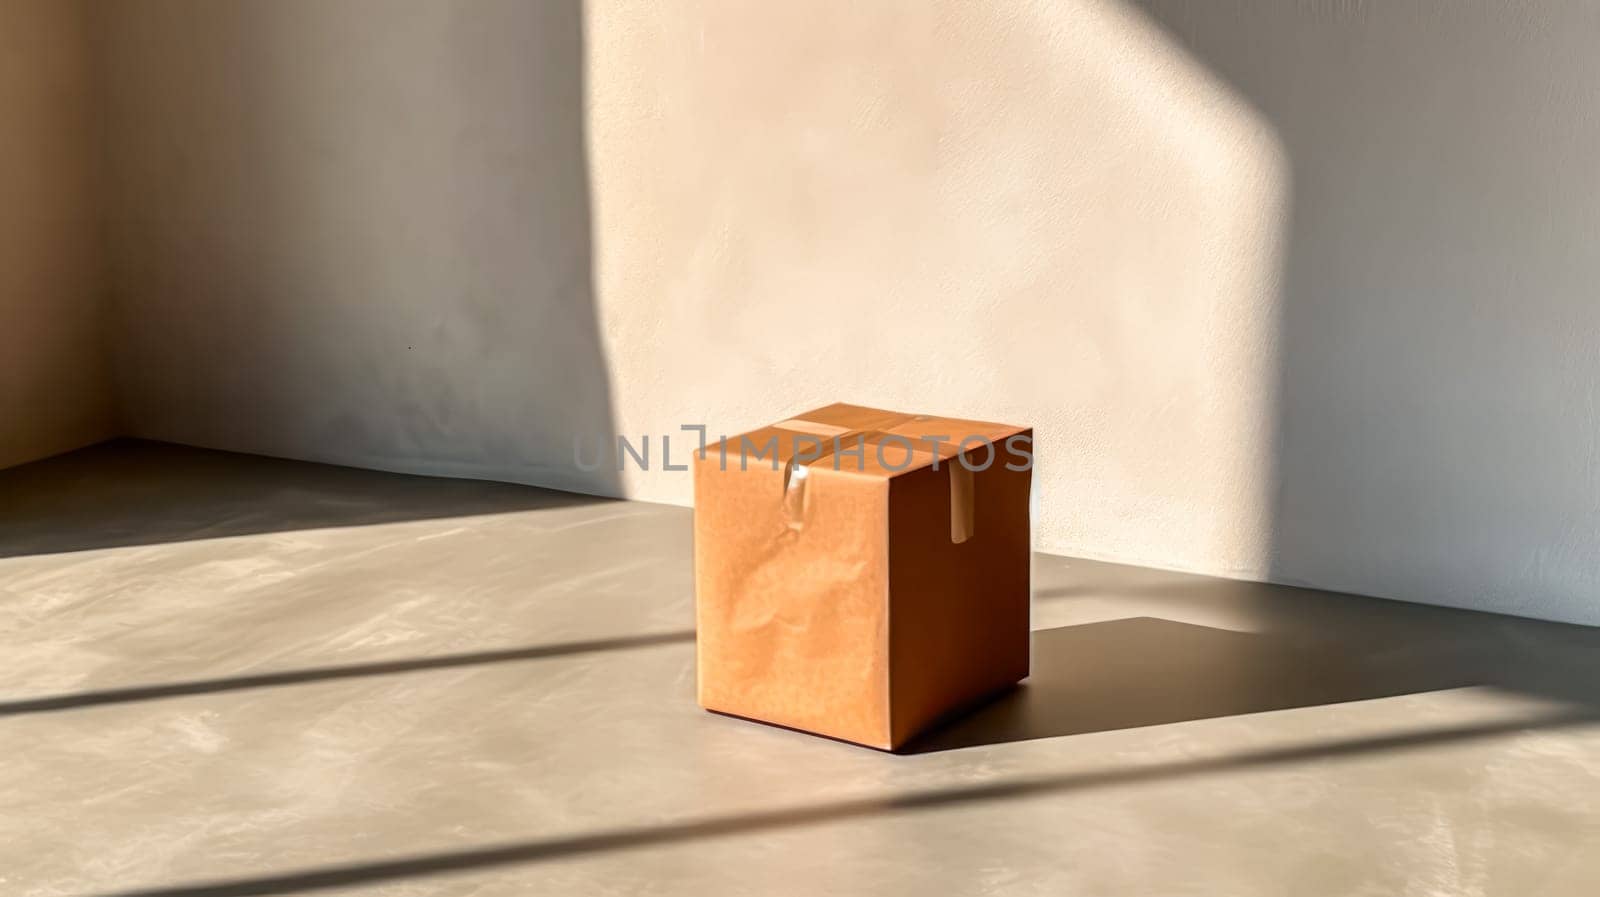 An empty cardboard box casting a shadow with a window cutout by Alla_Morozova93